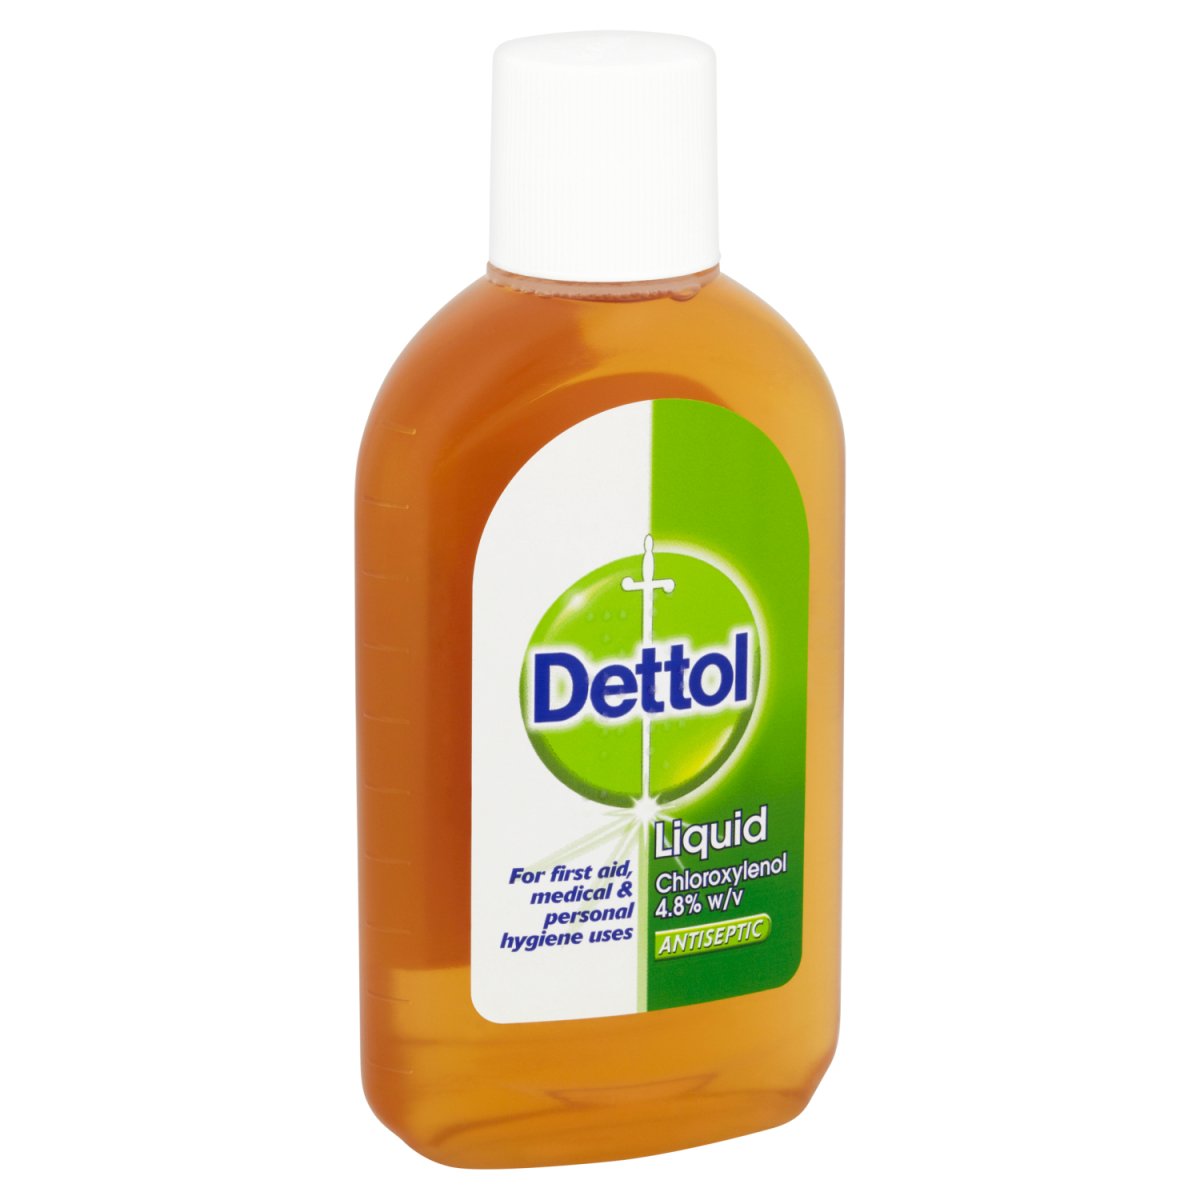 Dettol Disinfectant Liquid 250ml (MED) - Intamarque - Wholesale 0000050158072